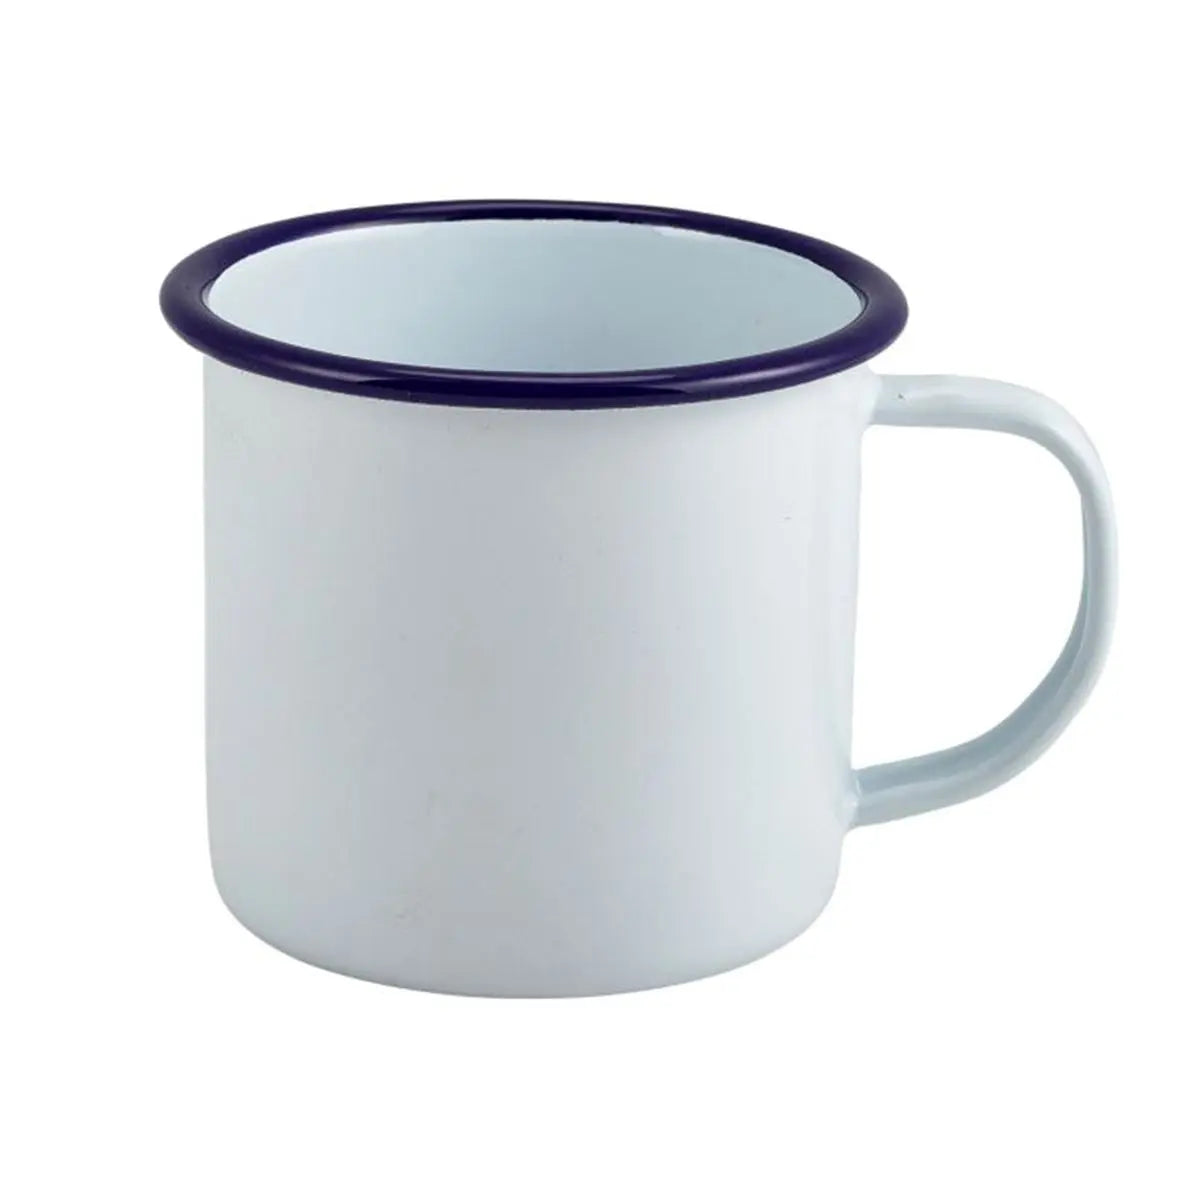 Personalised Enamel Mug Enamel - White with Blue Rim  